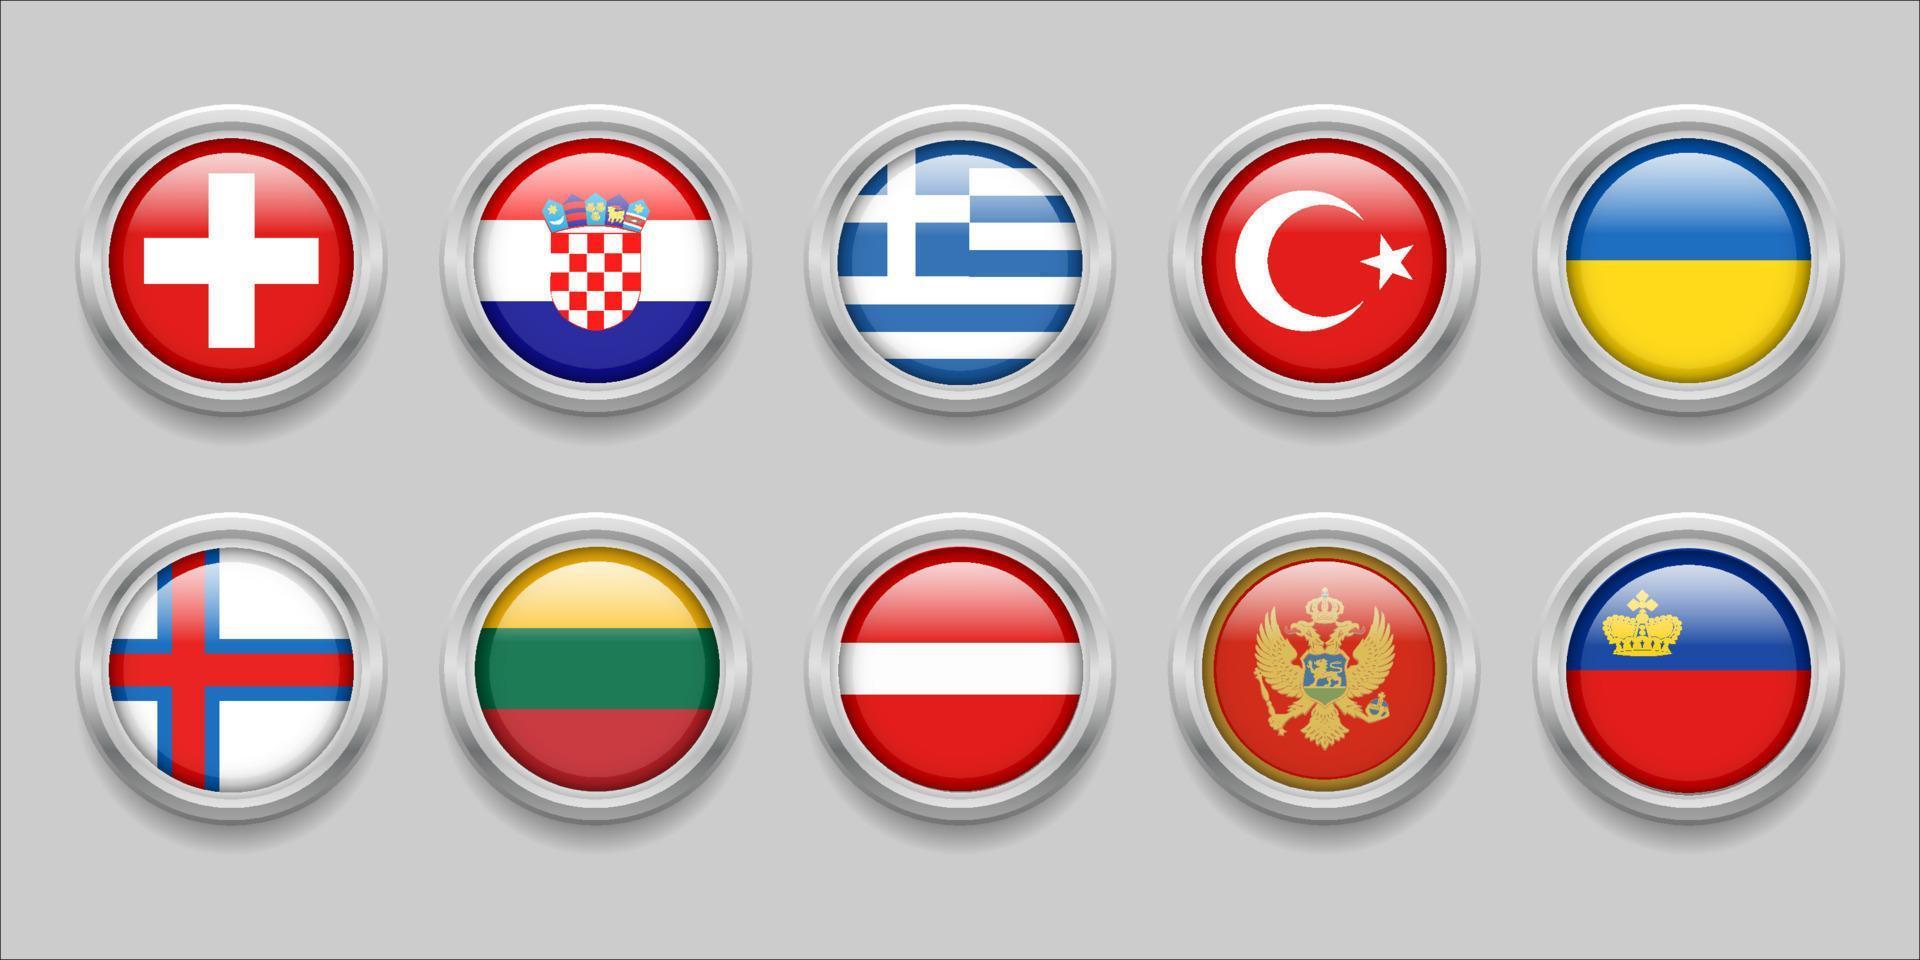 drapeaux ronds europe ensemble collection drapeau rond 3d, drapeau insigne, îles féroé, suisse, croatie, dinde, lettonie, ukraine, liechtenstein, lituanie, grèce, monténégro vecteur